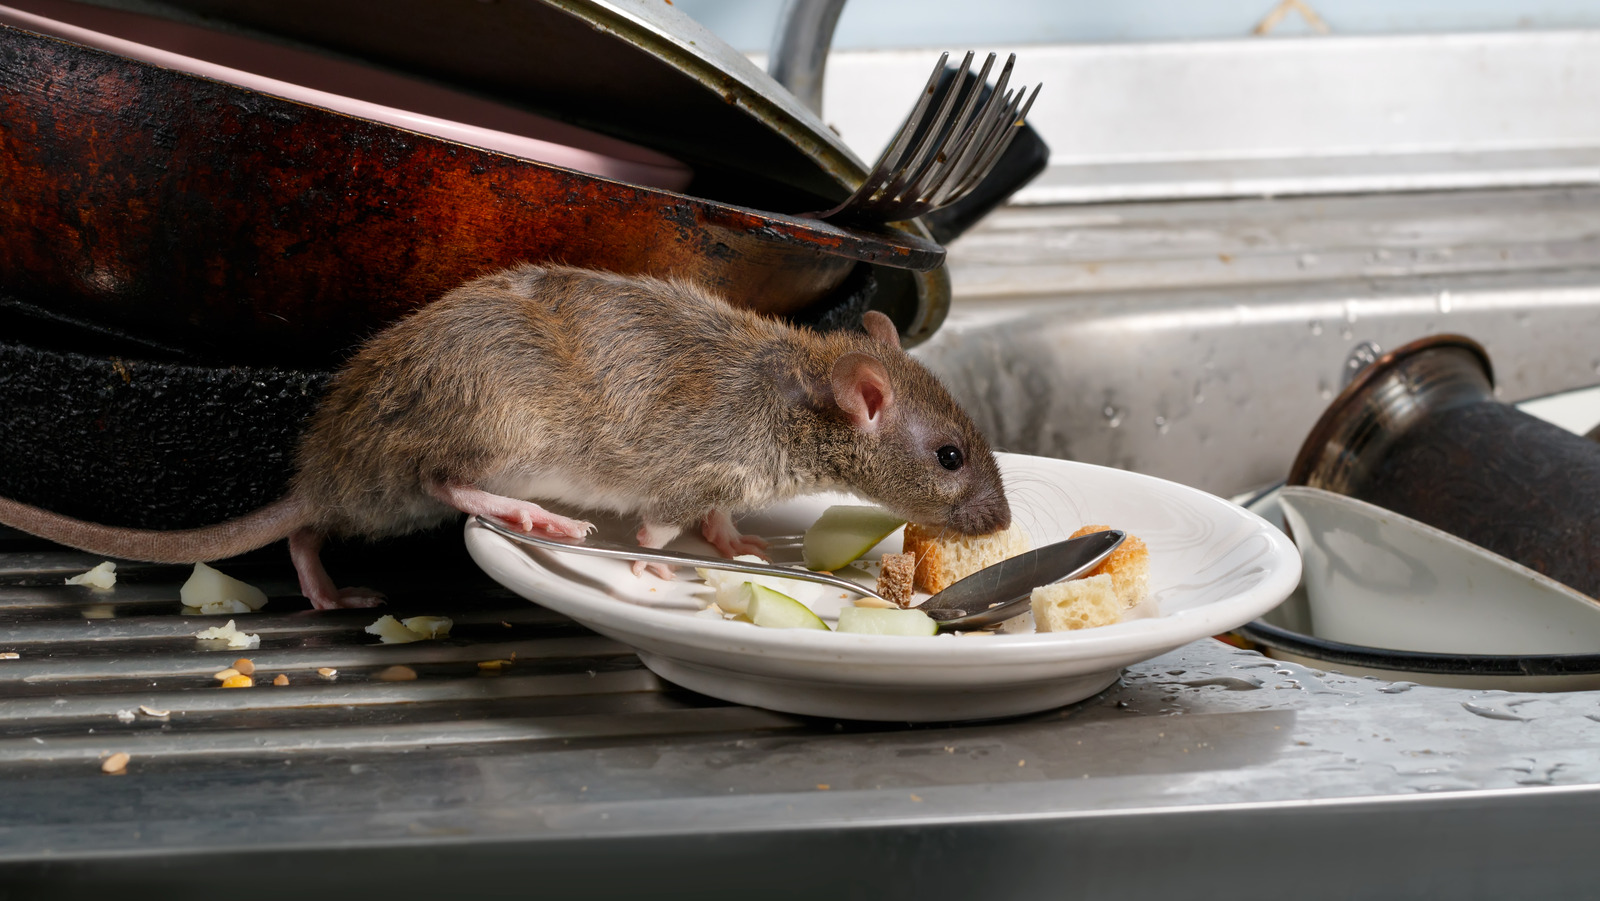 Rat Poison Is a Bad Idea